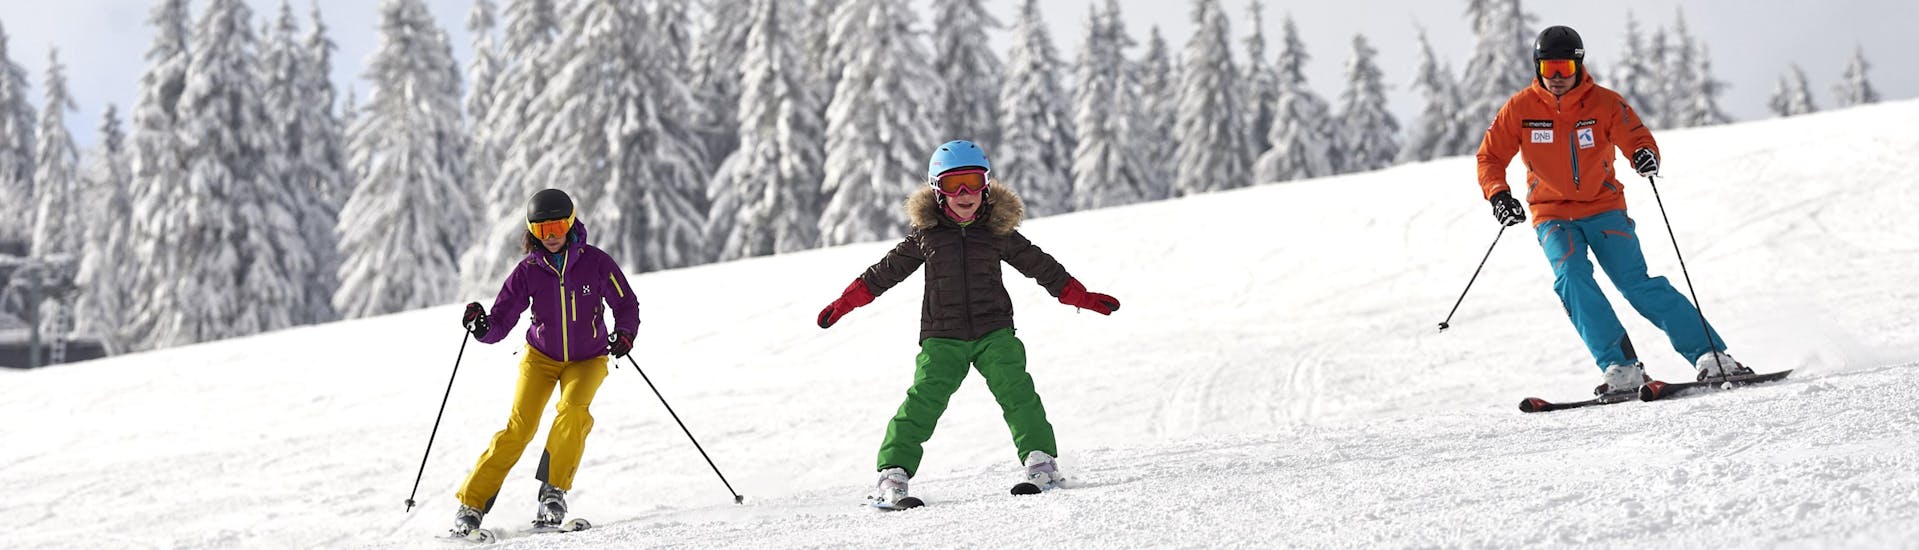 Tijdens een skiles met een skischool in Großer Arber heb je een prachtig uitzicht op zonnige bergen.